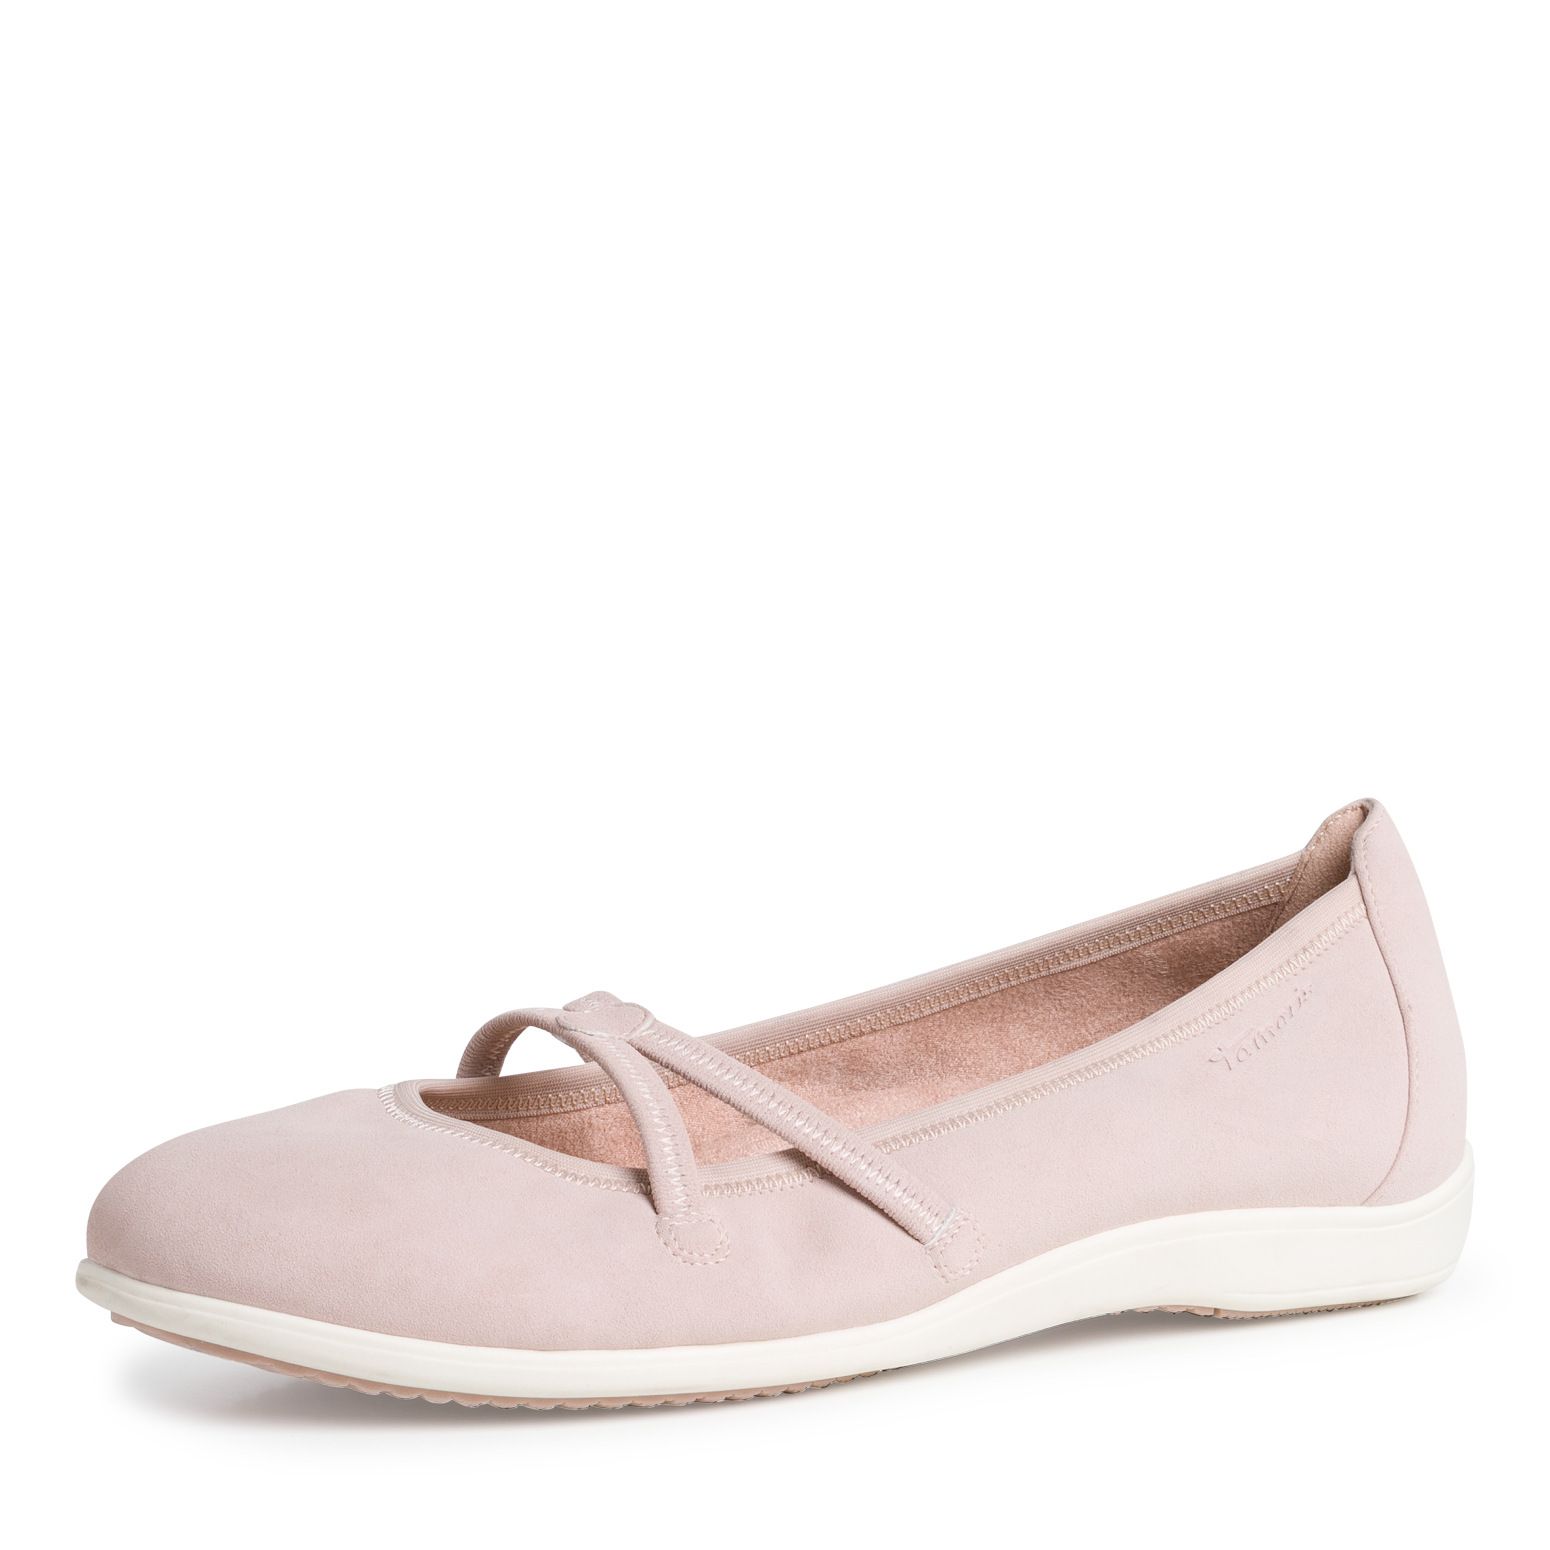 TAMARIS balerina cipő 1-22106-28 521 ROSE